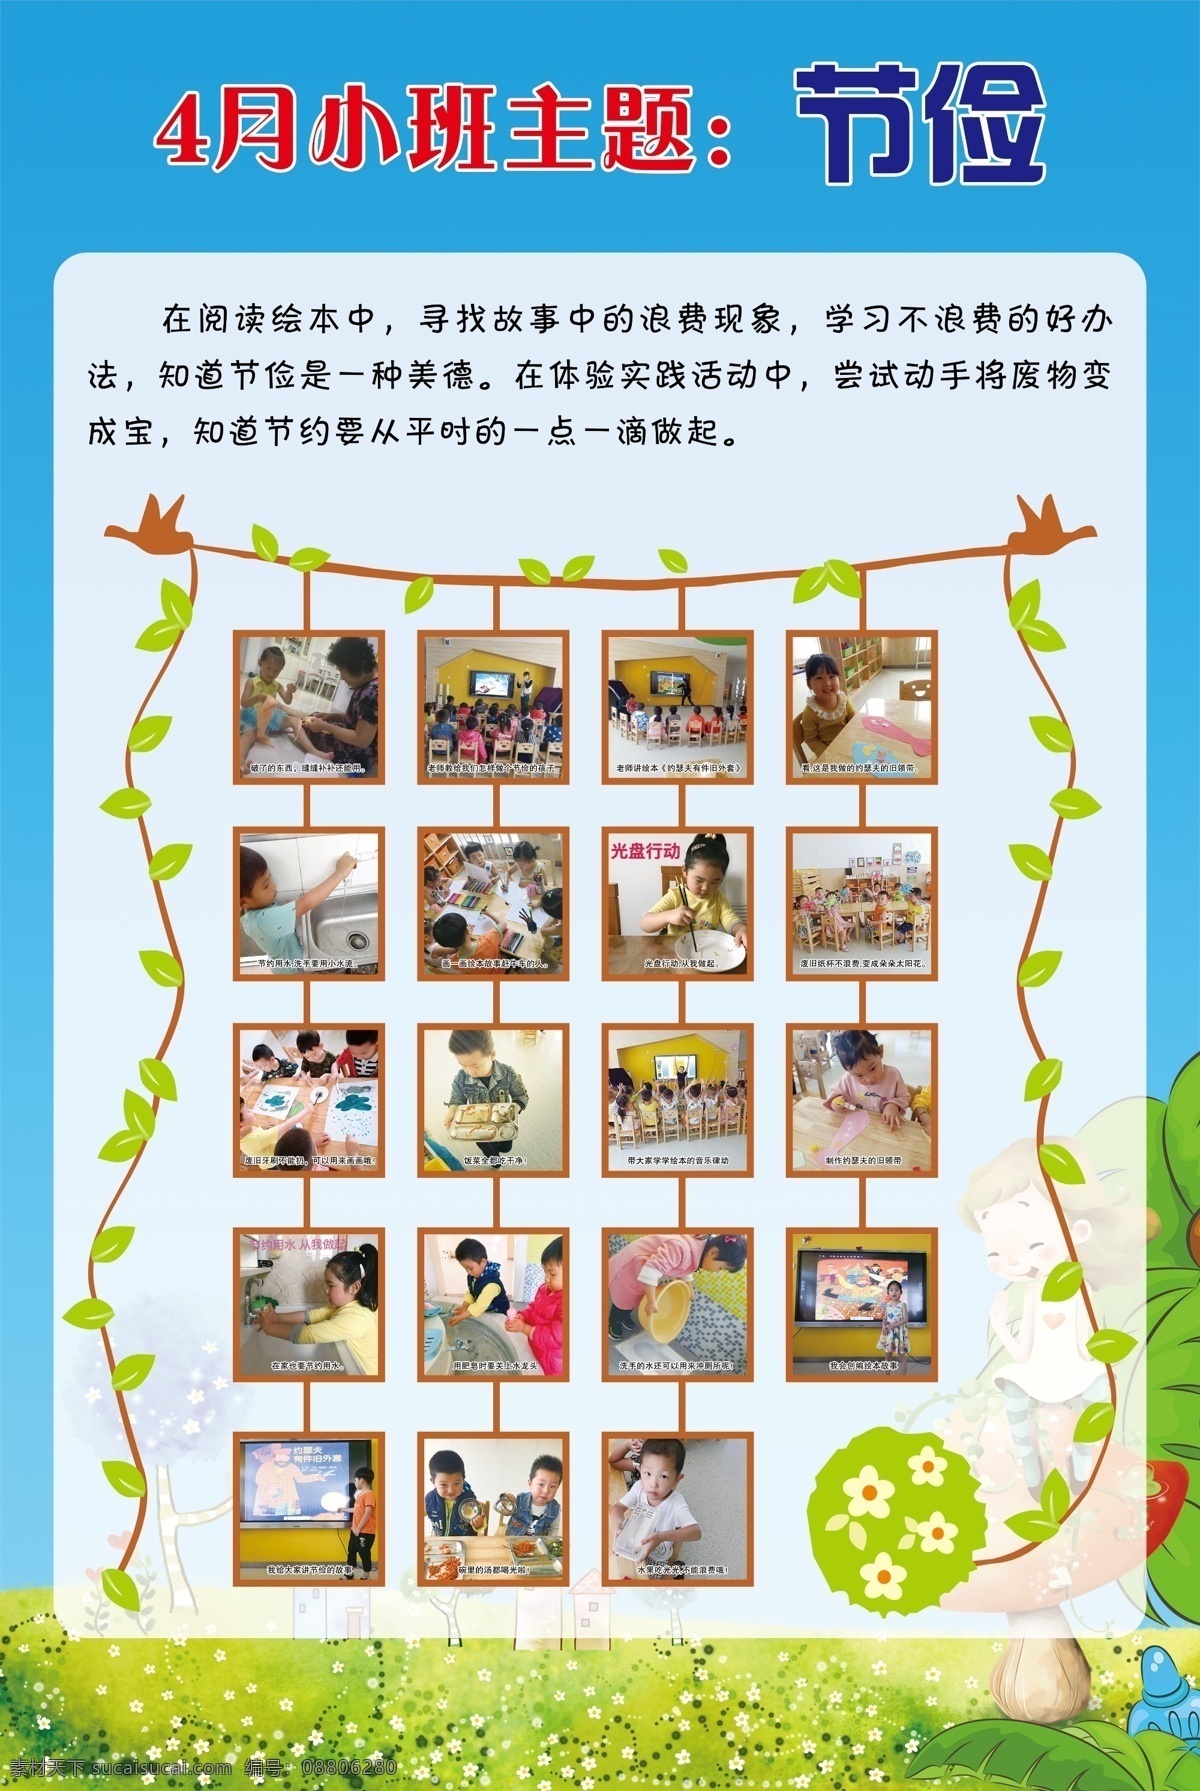 主题节俭 排版 形状 中学 小学 幼儿园 照片 模板 背景 颜色 tiff 分层 卡通 气球 彩虹 儿童 幼儿